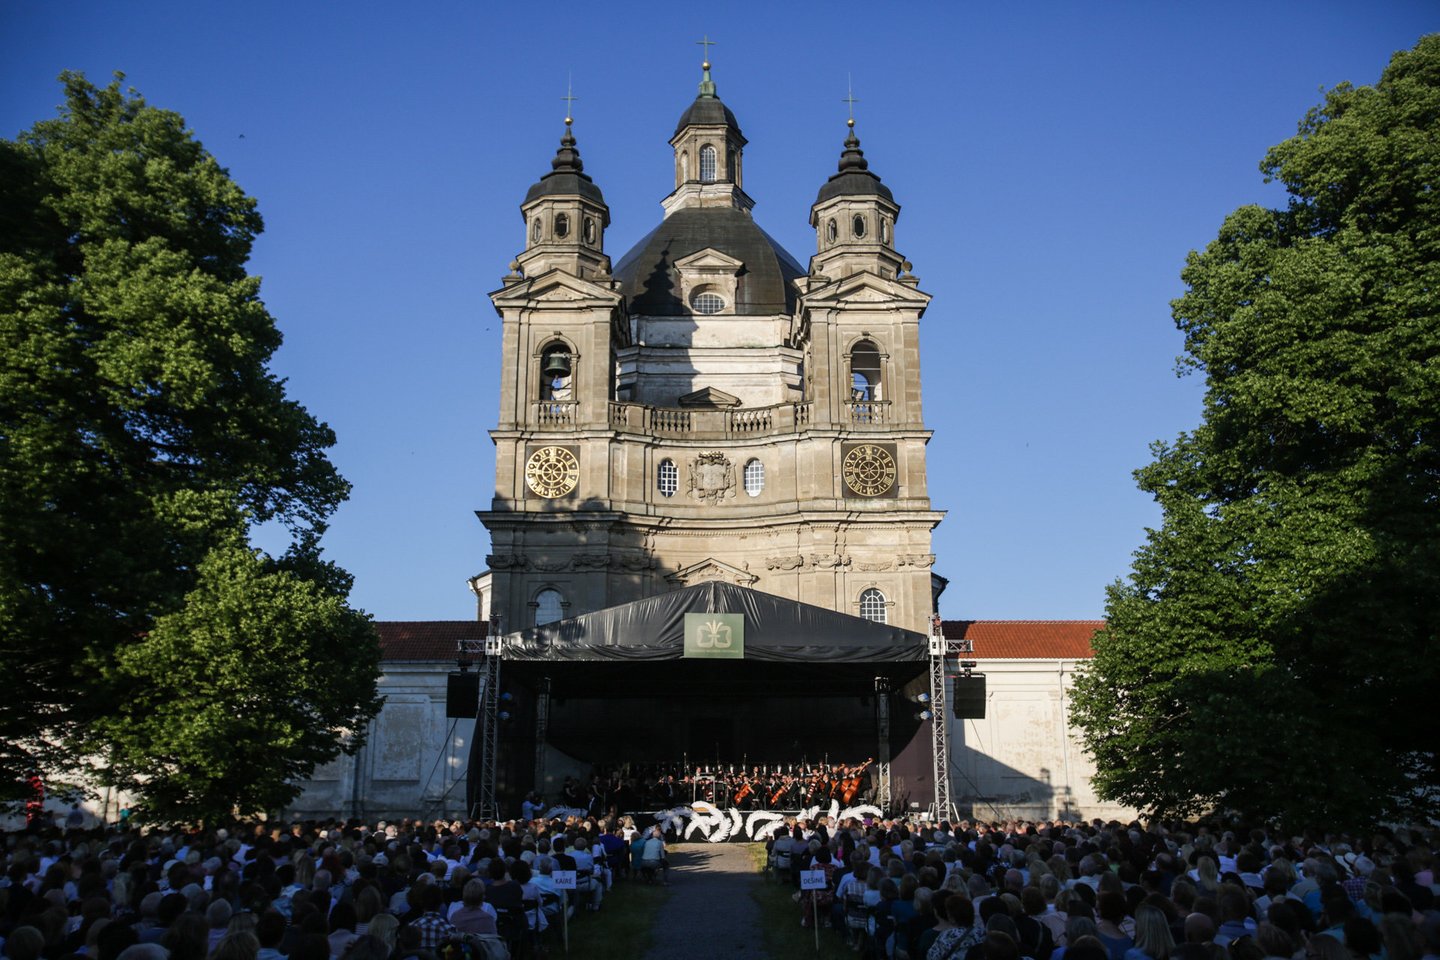  Pažaislio muzikos festivalio atidarymo koncertas.<br> G.Bitvinsko nuotr.